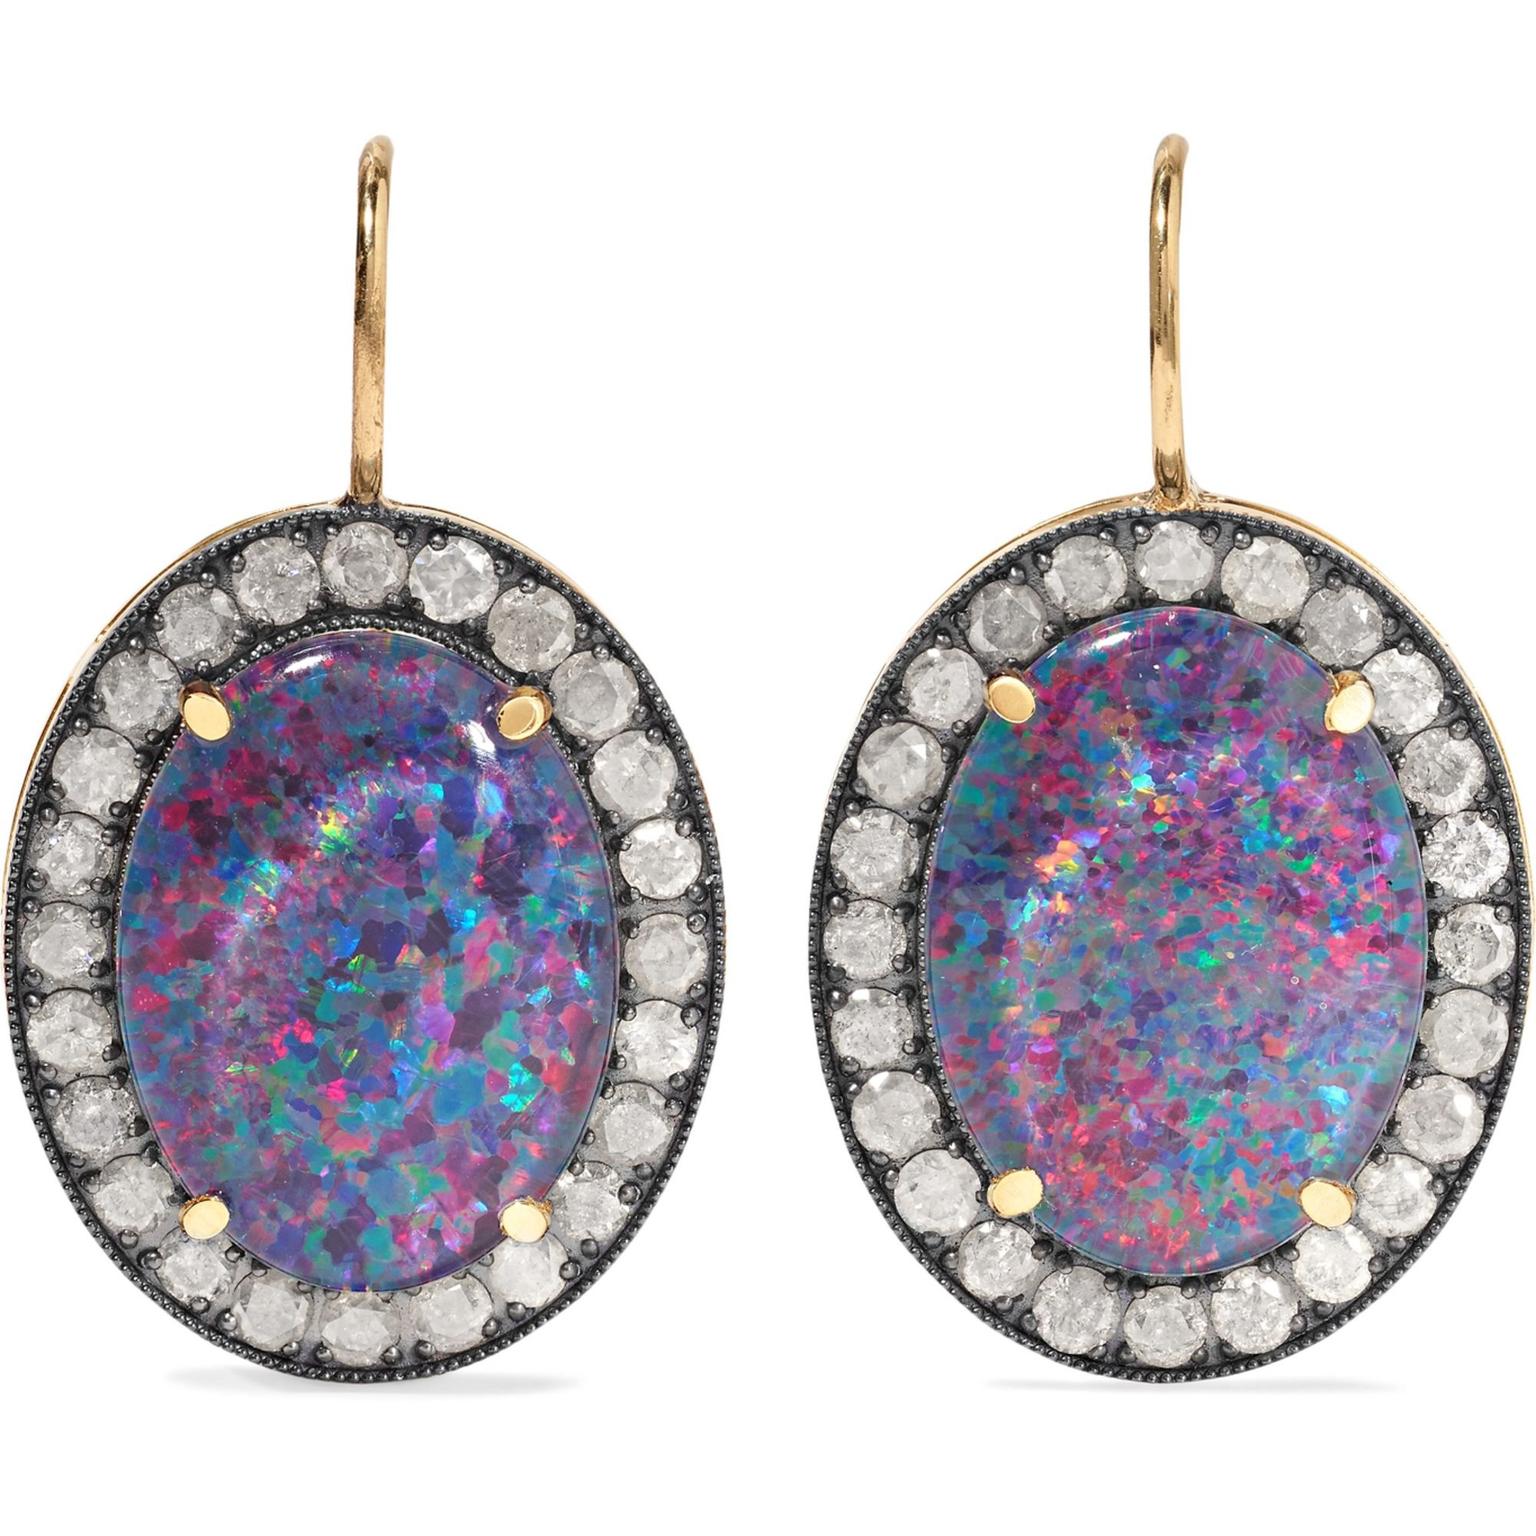 Opal earrings by Andrea Fohrman | Andrea Fohrman | The Jewellery Editor